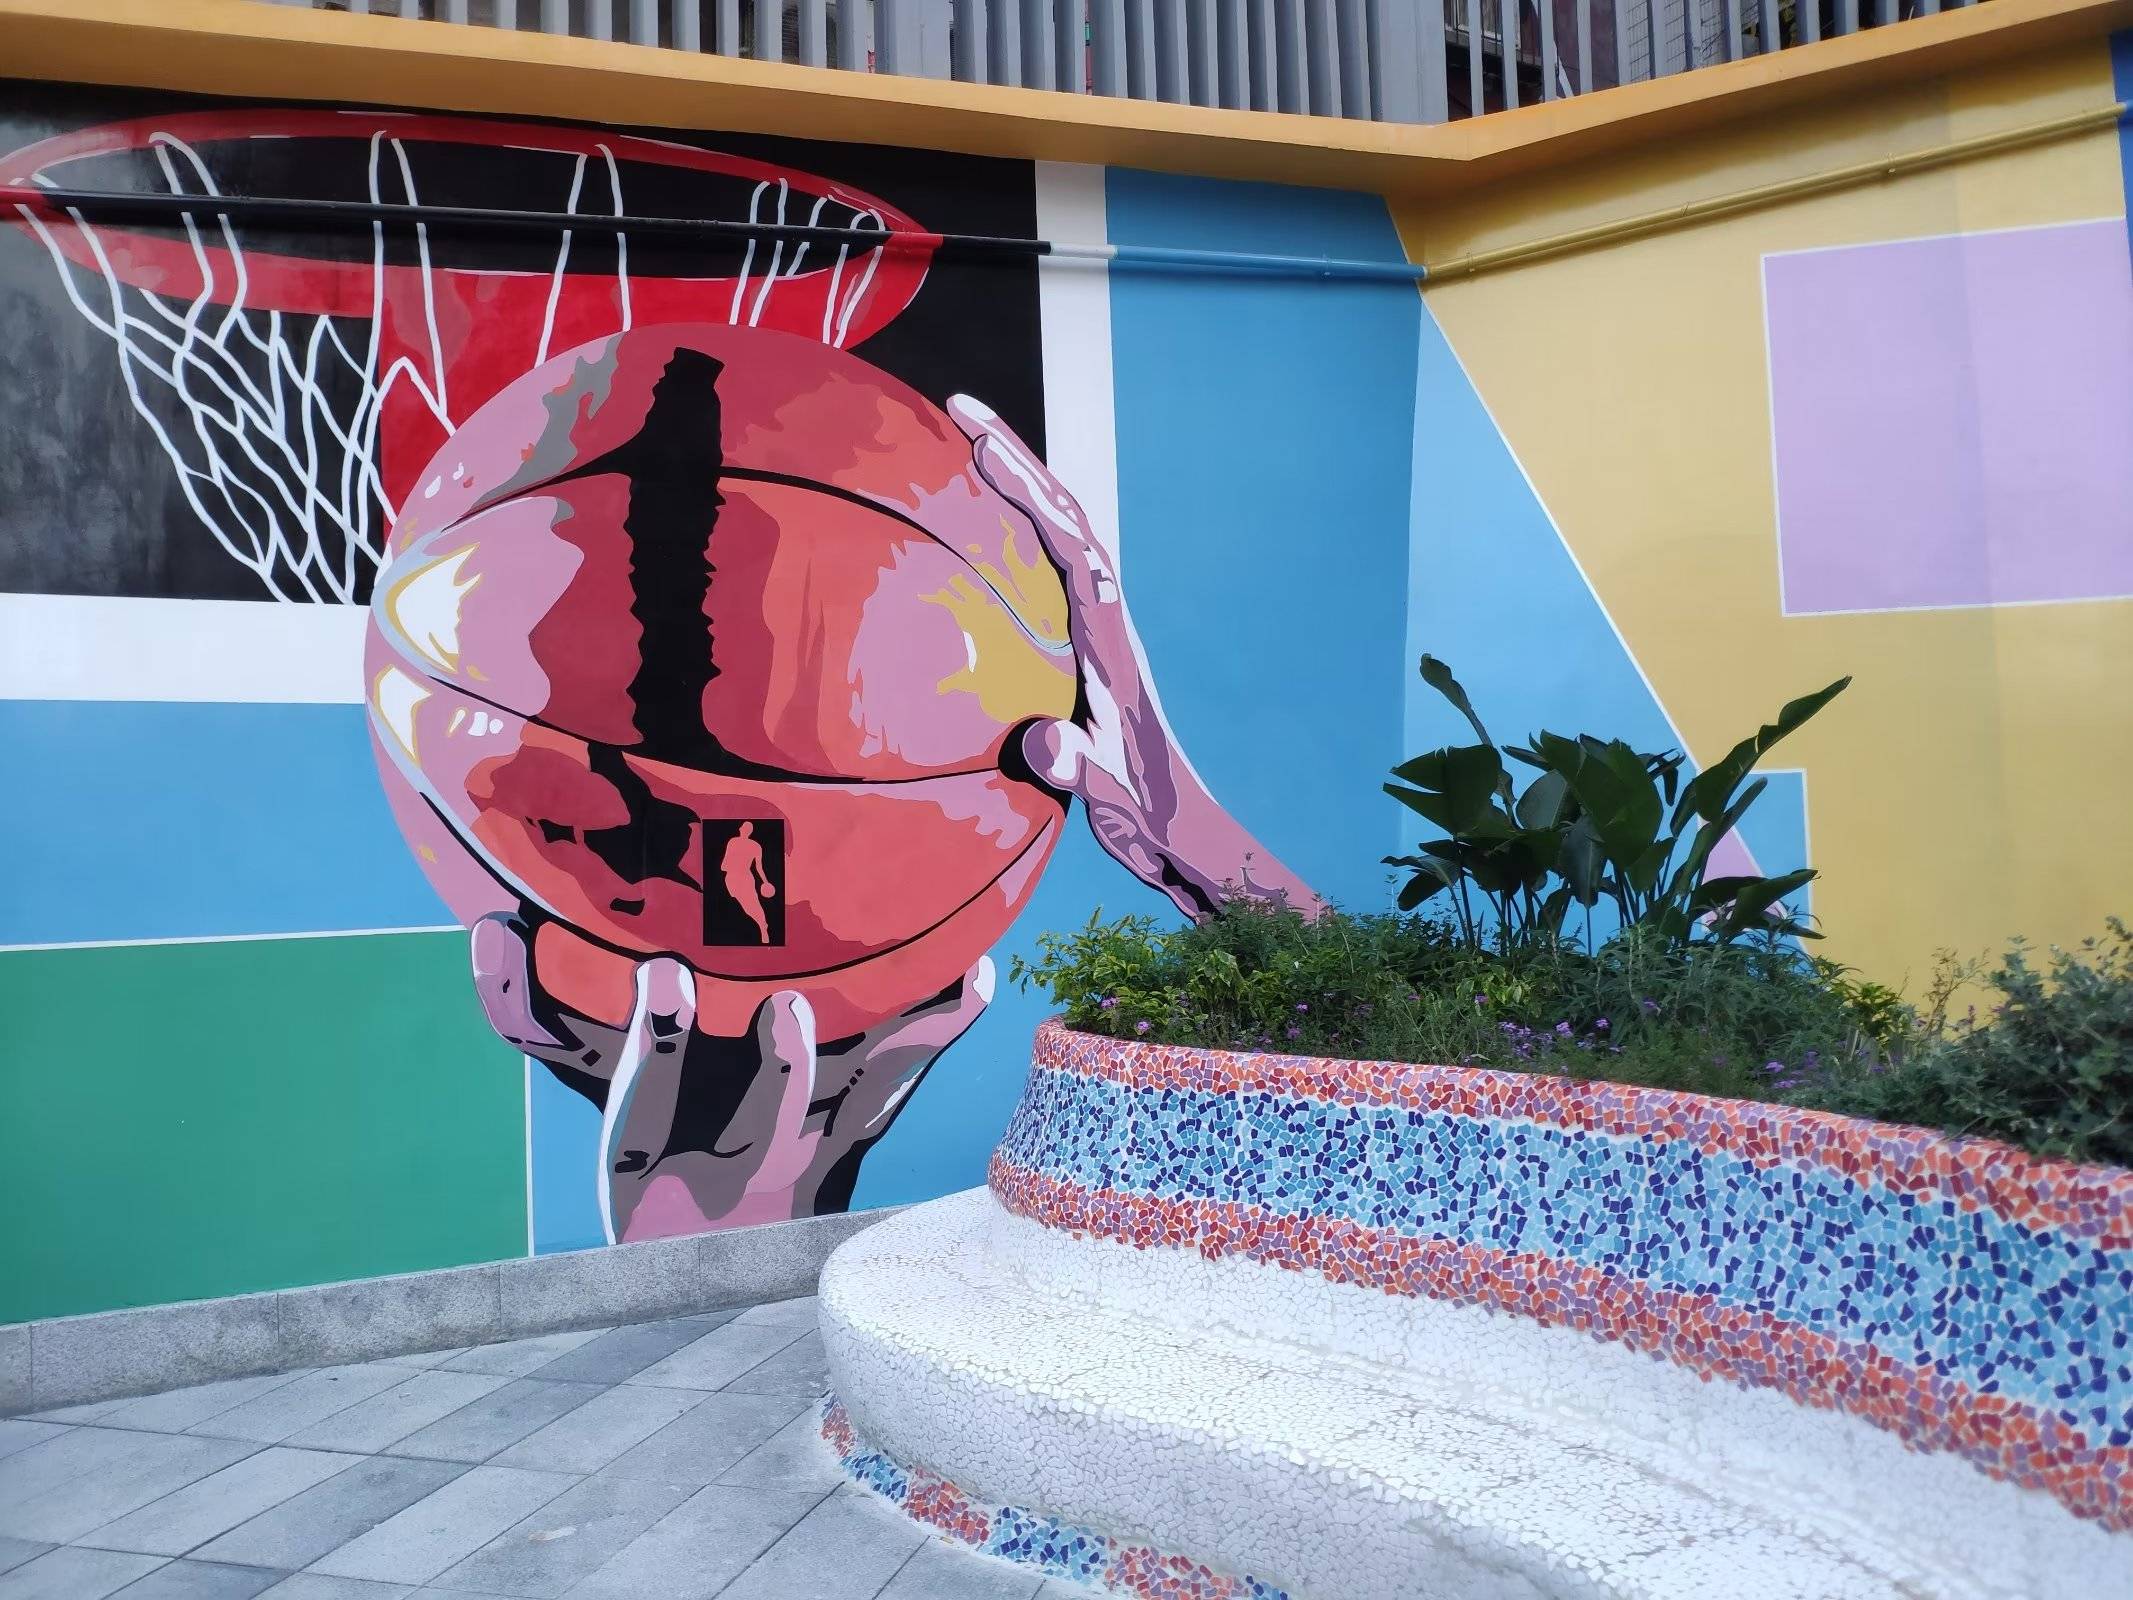 重庆:高颜值口袋公园 边角地改造成彩绘篮球主题游园